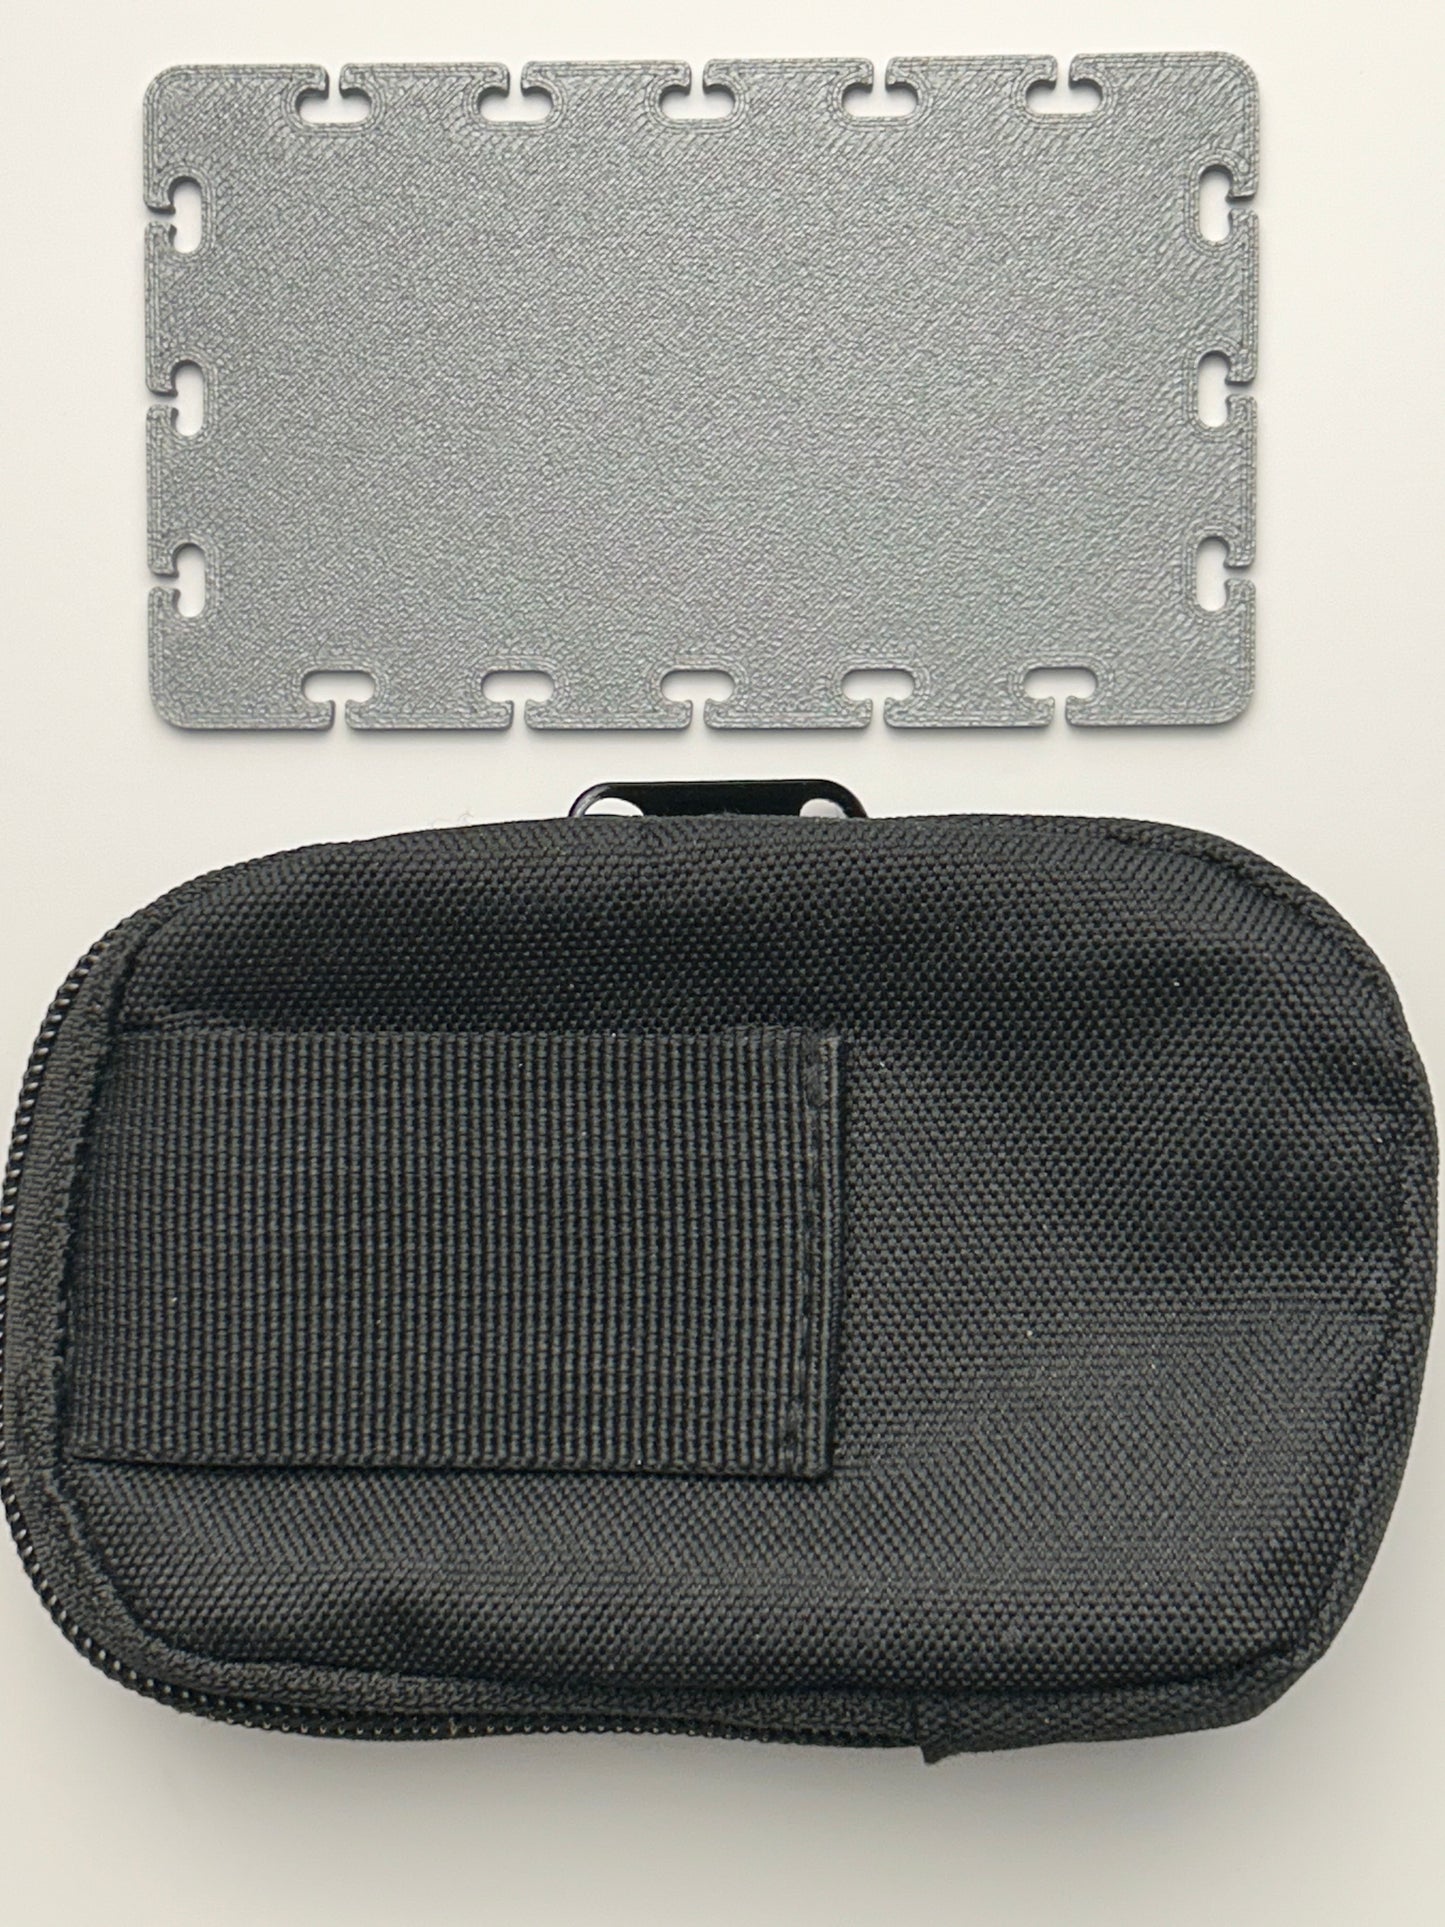 The Pocket Rack™ EDC Organizer Mini Kit